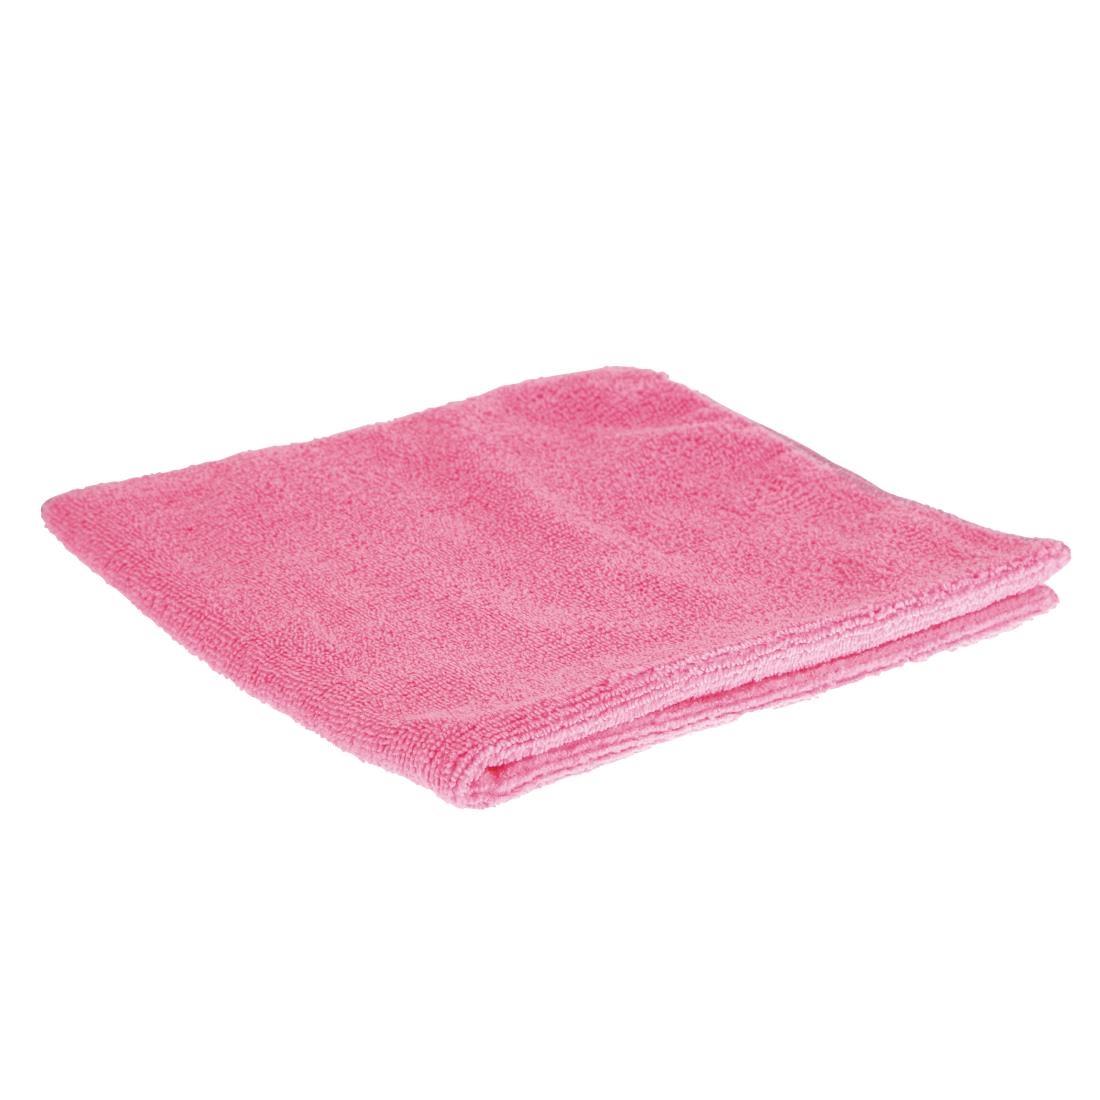 Jantex Microfibre Cloths Pink (Pack of 5) - DN840  - 1